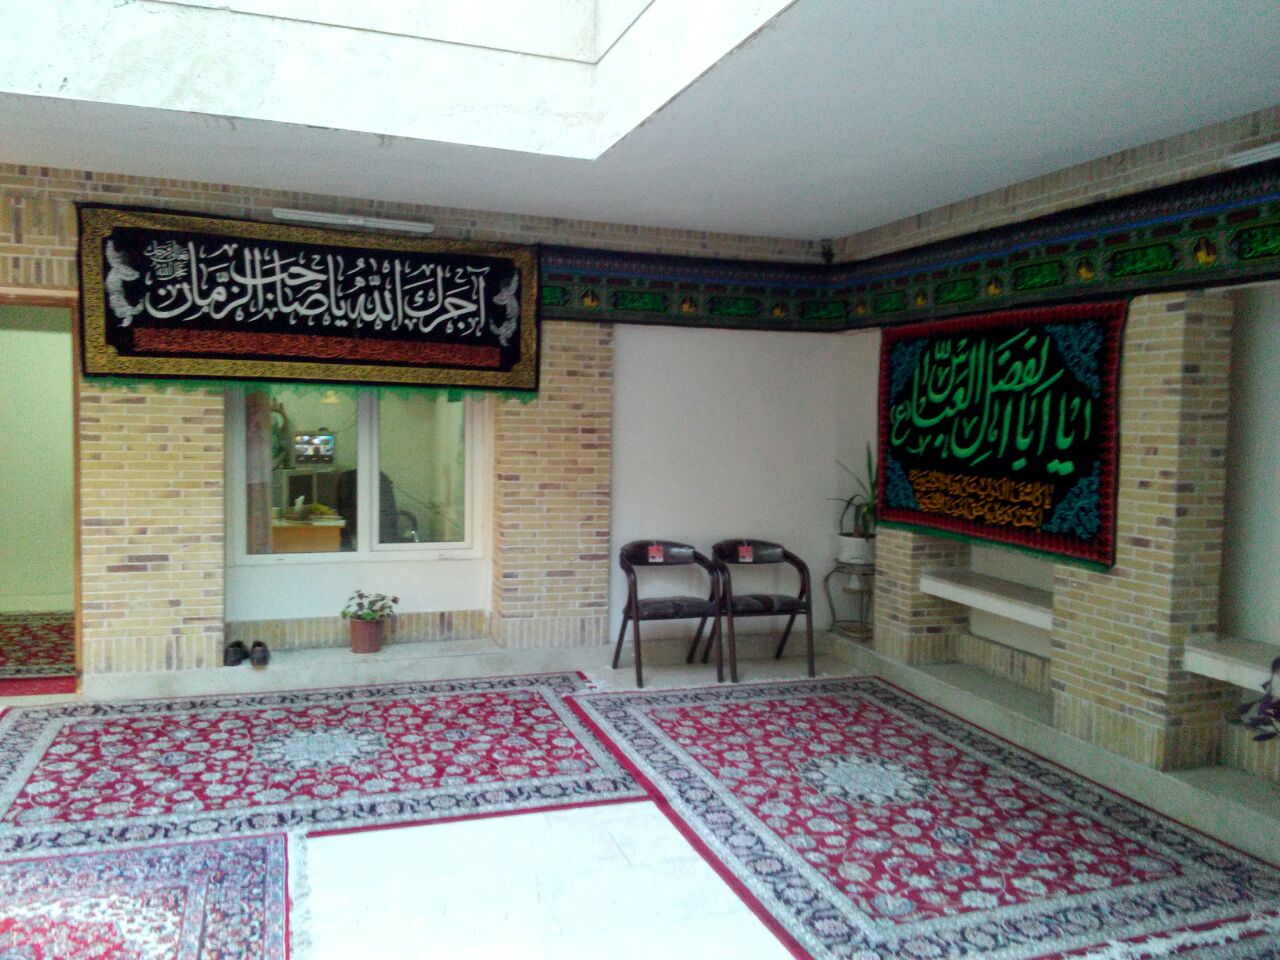 سیاه پوش شدن مسجد امام خمینی